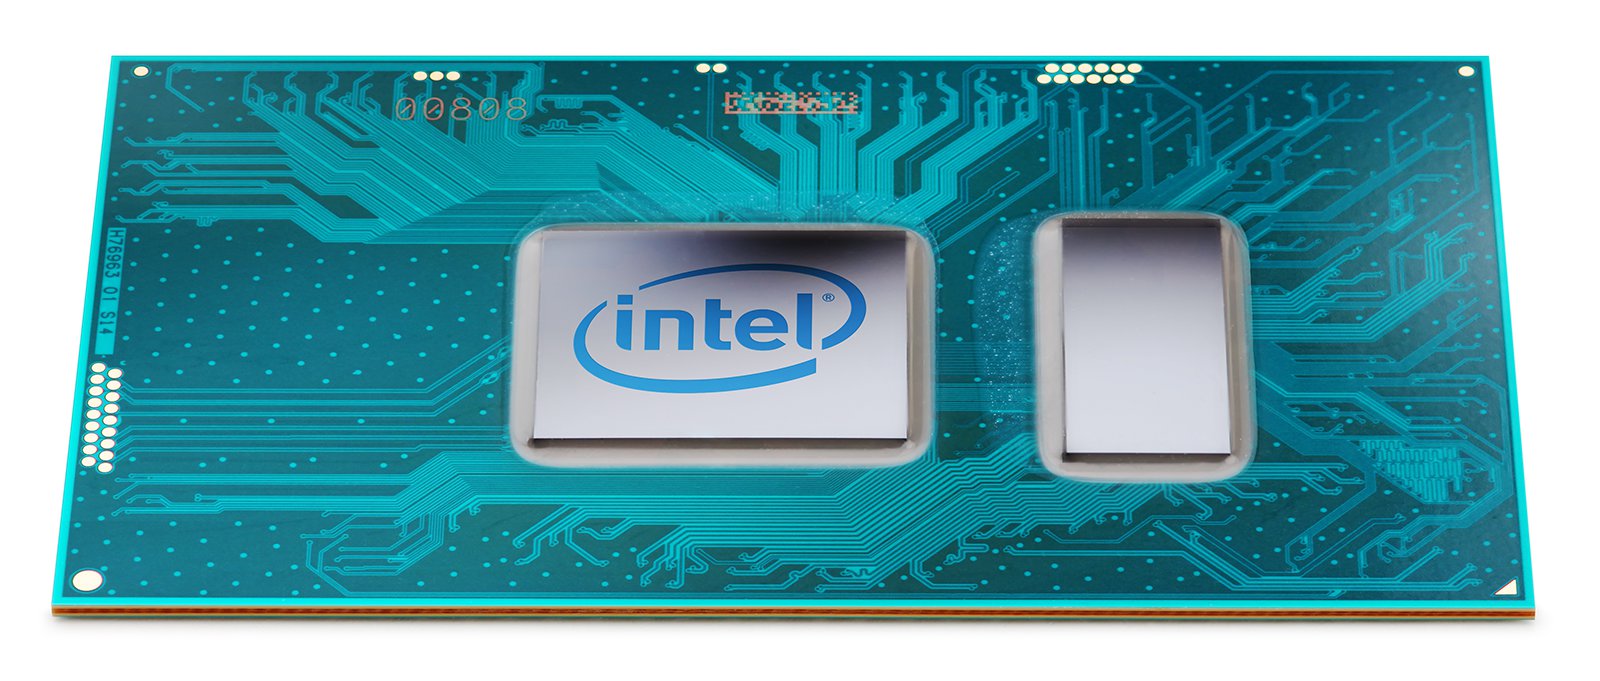 Intel+7th+gen+Core+CPU